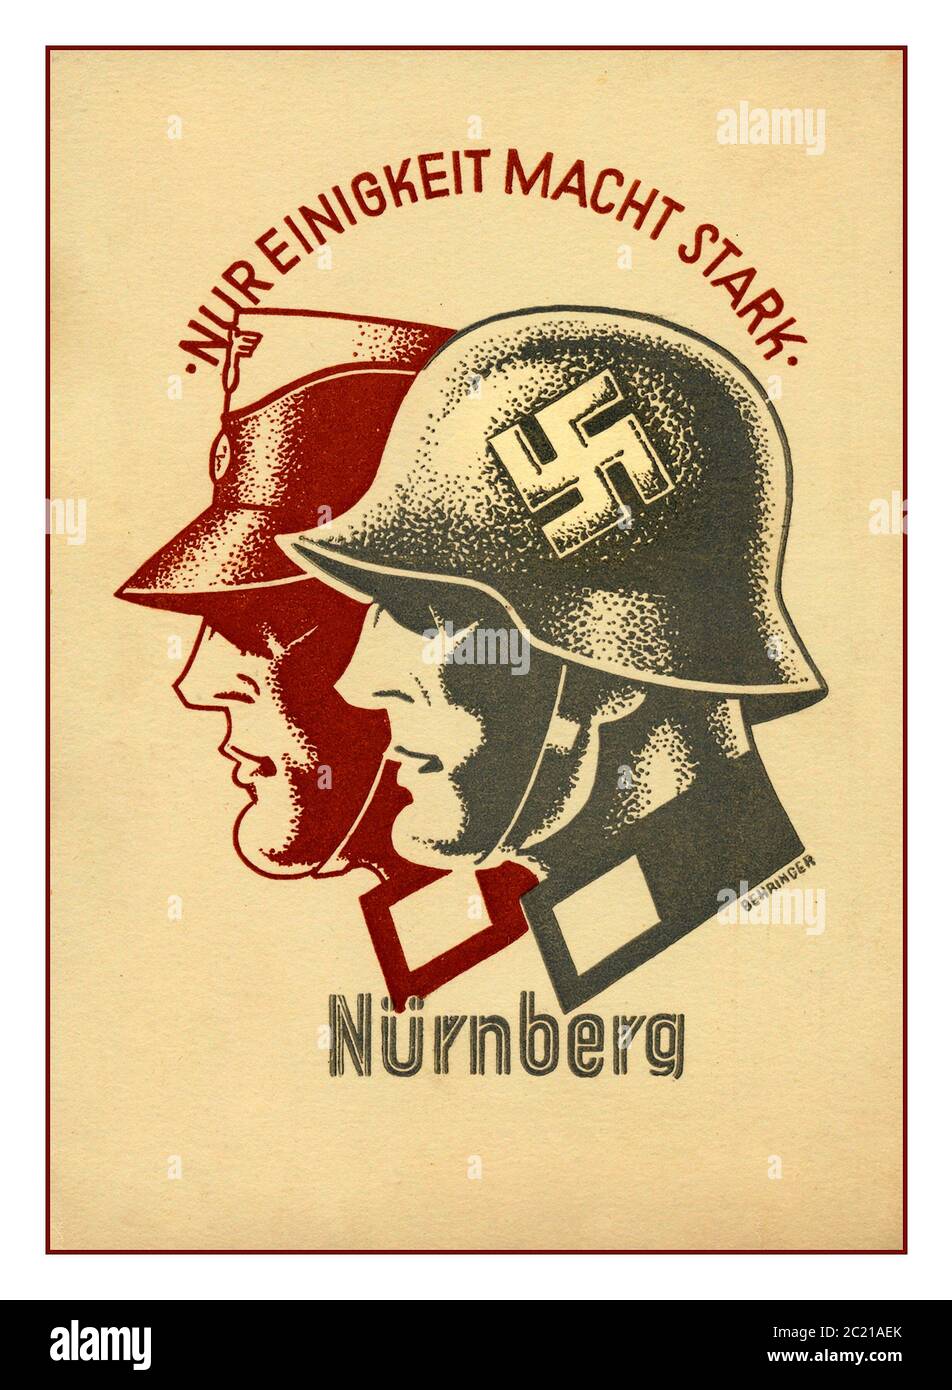 Nazi-Propaganda-Plakat des Jahrgangs 1930 'nur einheit macht stark' mit Profilen eines paramilitärischen uniformierten NSDAP-Mitglieds mit einem Nazi-Wehrmachtssoldaten, der einen Helm mit Hakenkreuz trägt. Nürnberg (der Treffpunkt der Rallye) untertippte unter der Abbildung. Stockfoto